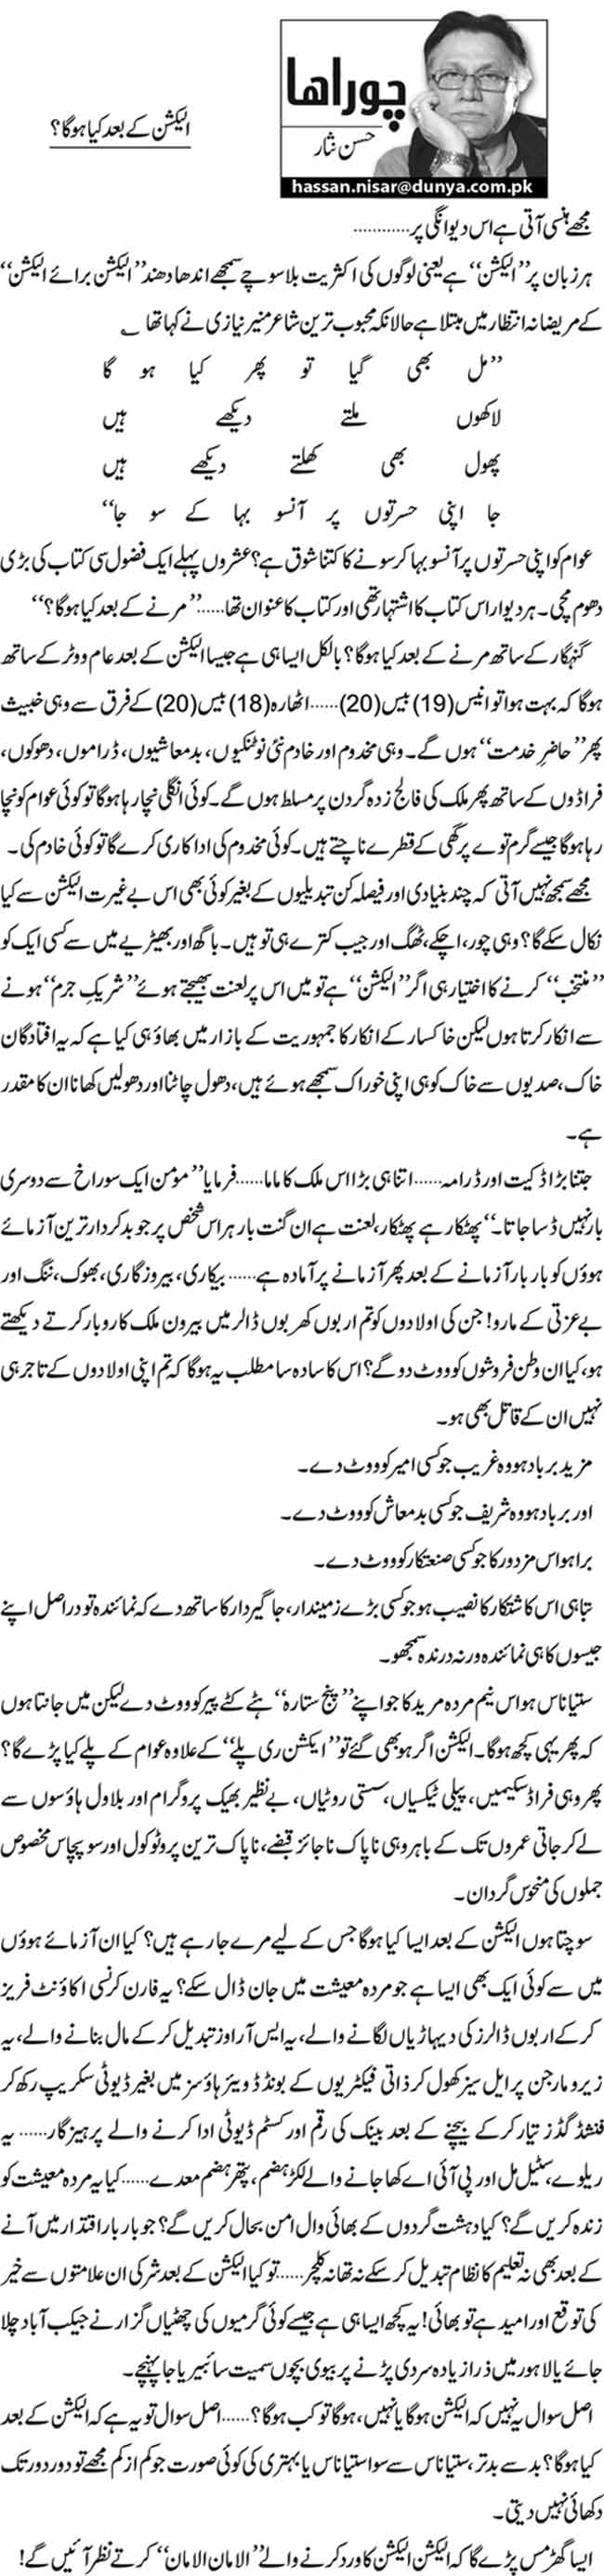 Minhaj-ul-Quran  Print Media Coverage Daily Dunya - Hassan Nisar